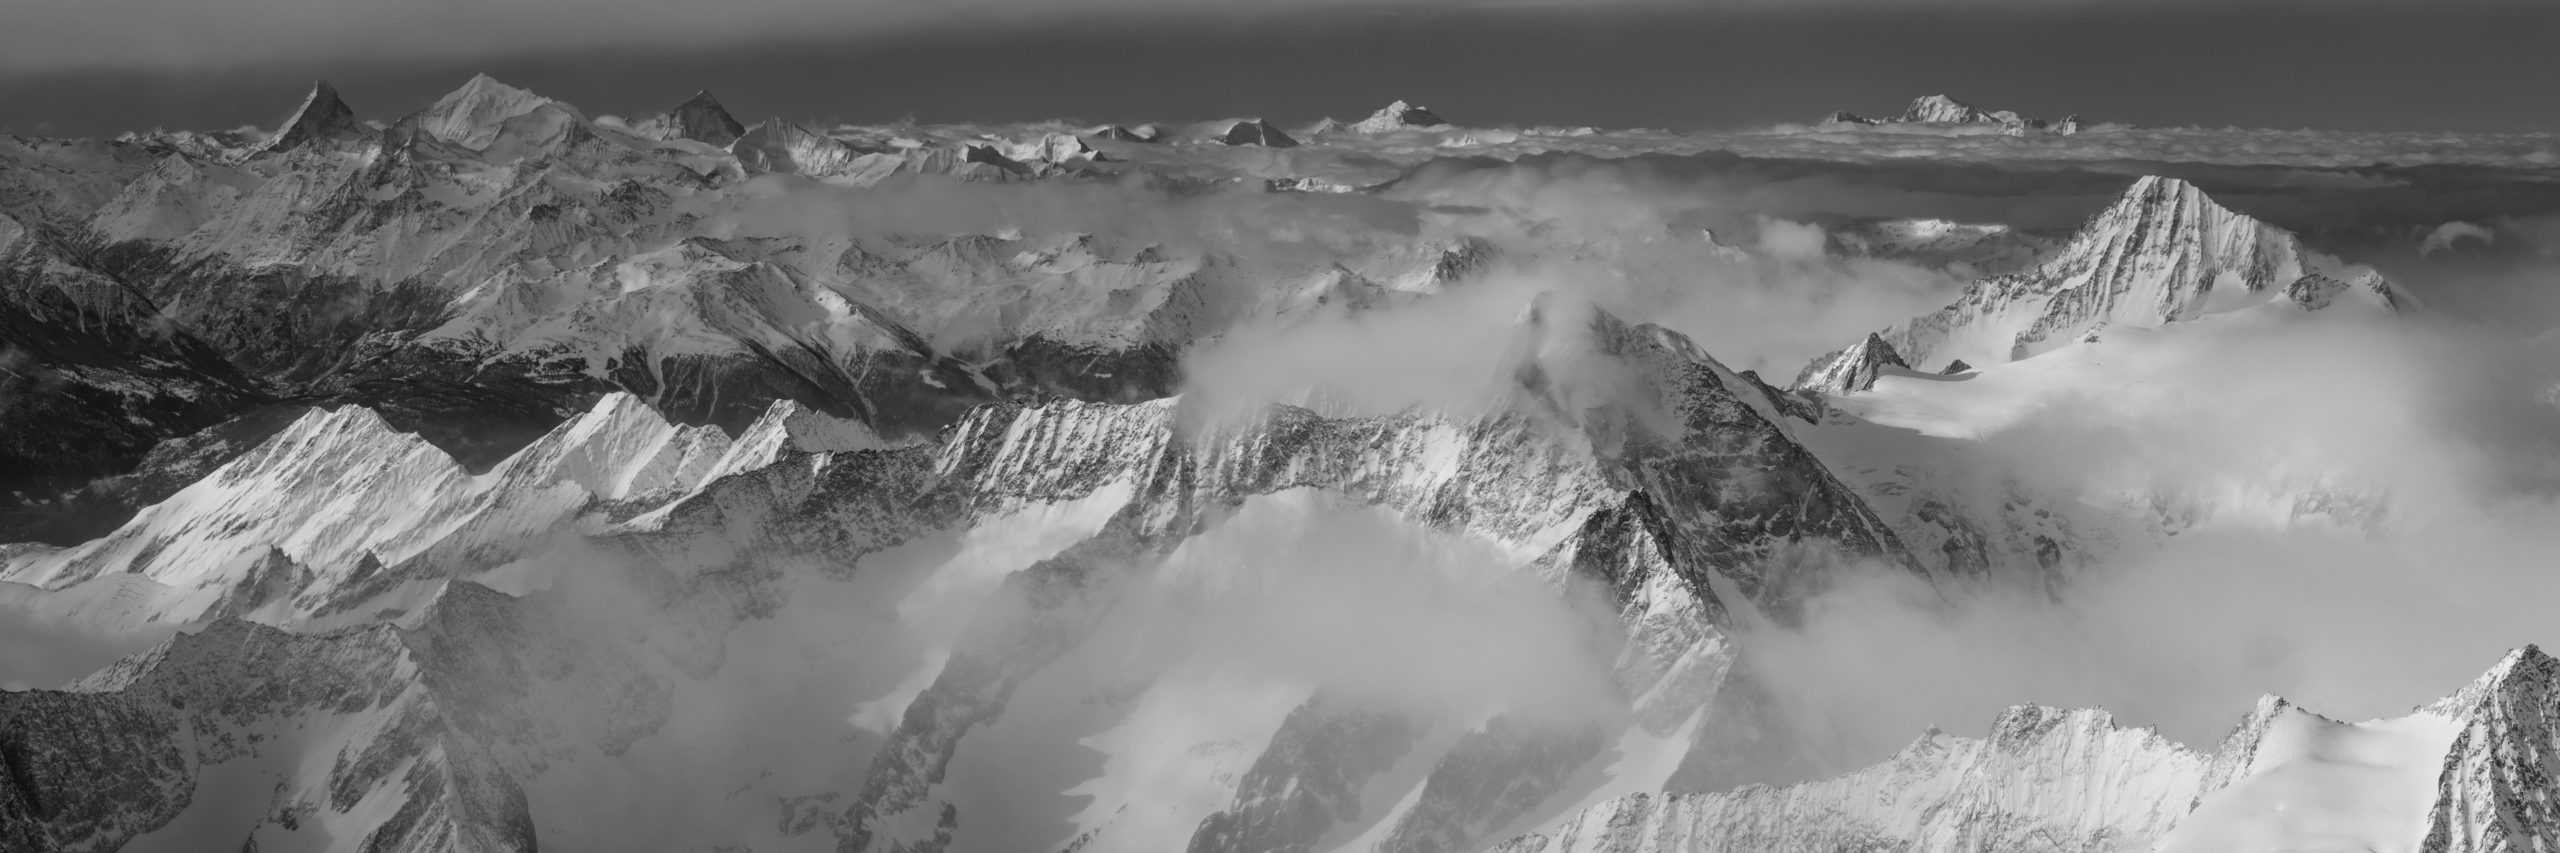 Panorama montagne suisse - Massifs montagneux de sommet des Alpes dans une mer de nuages